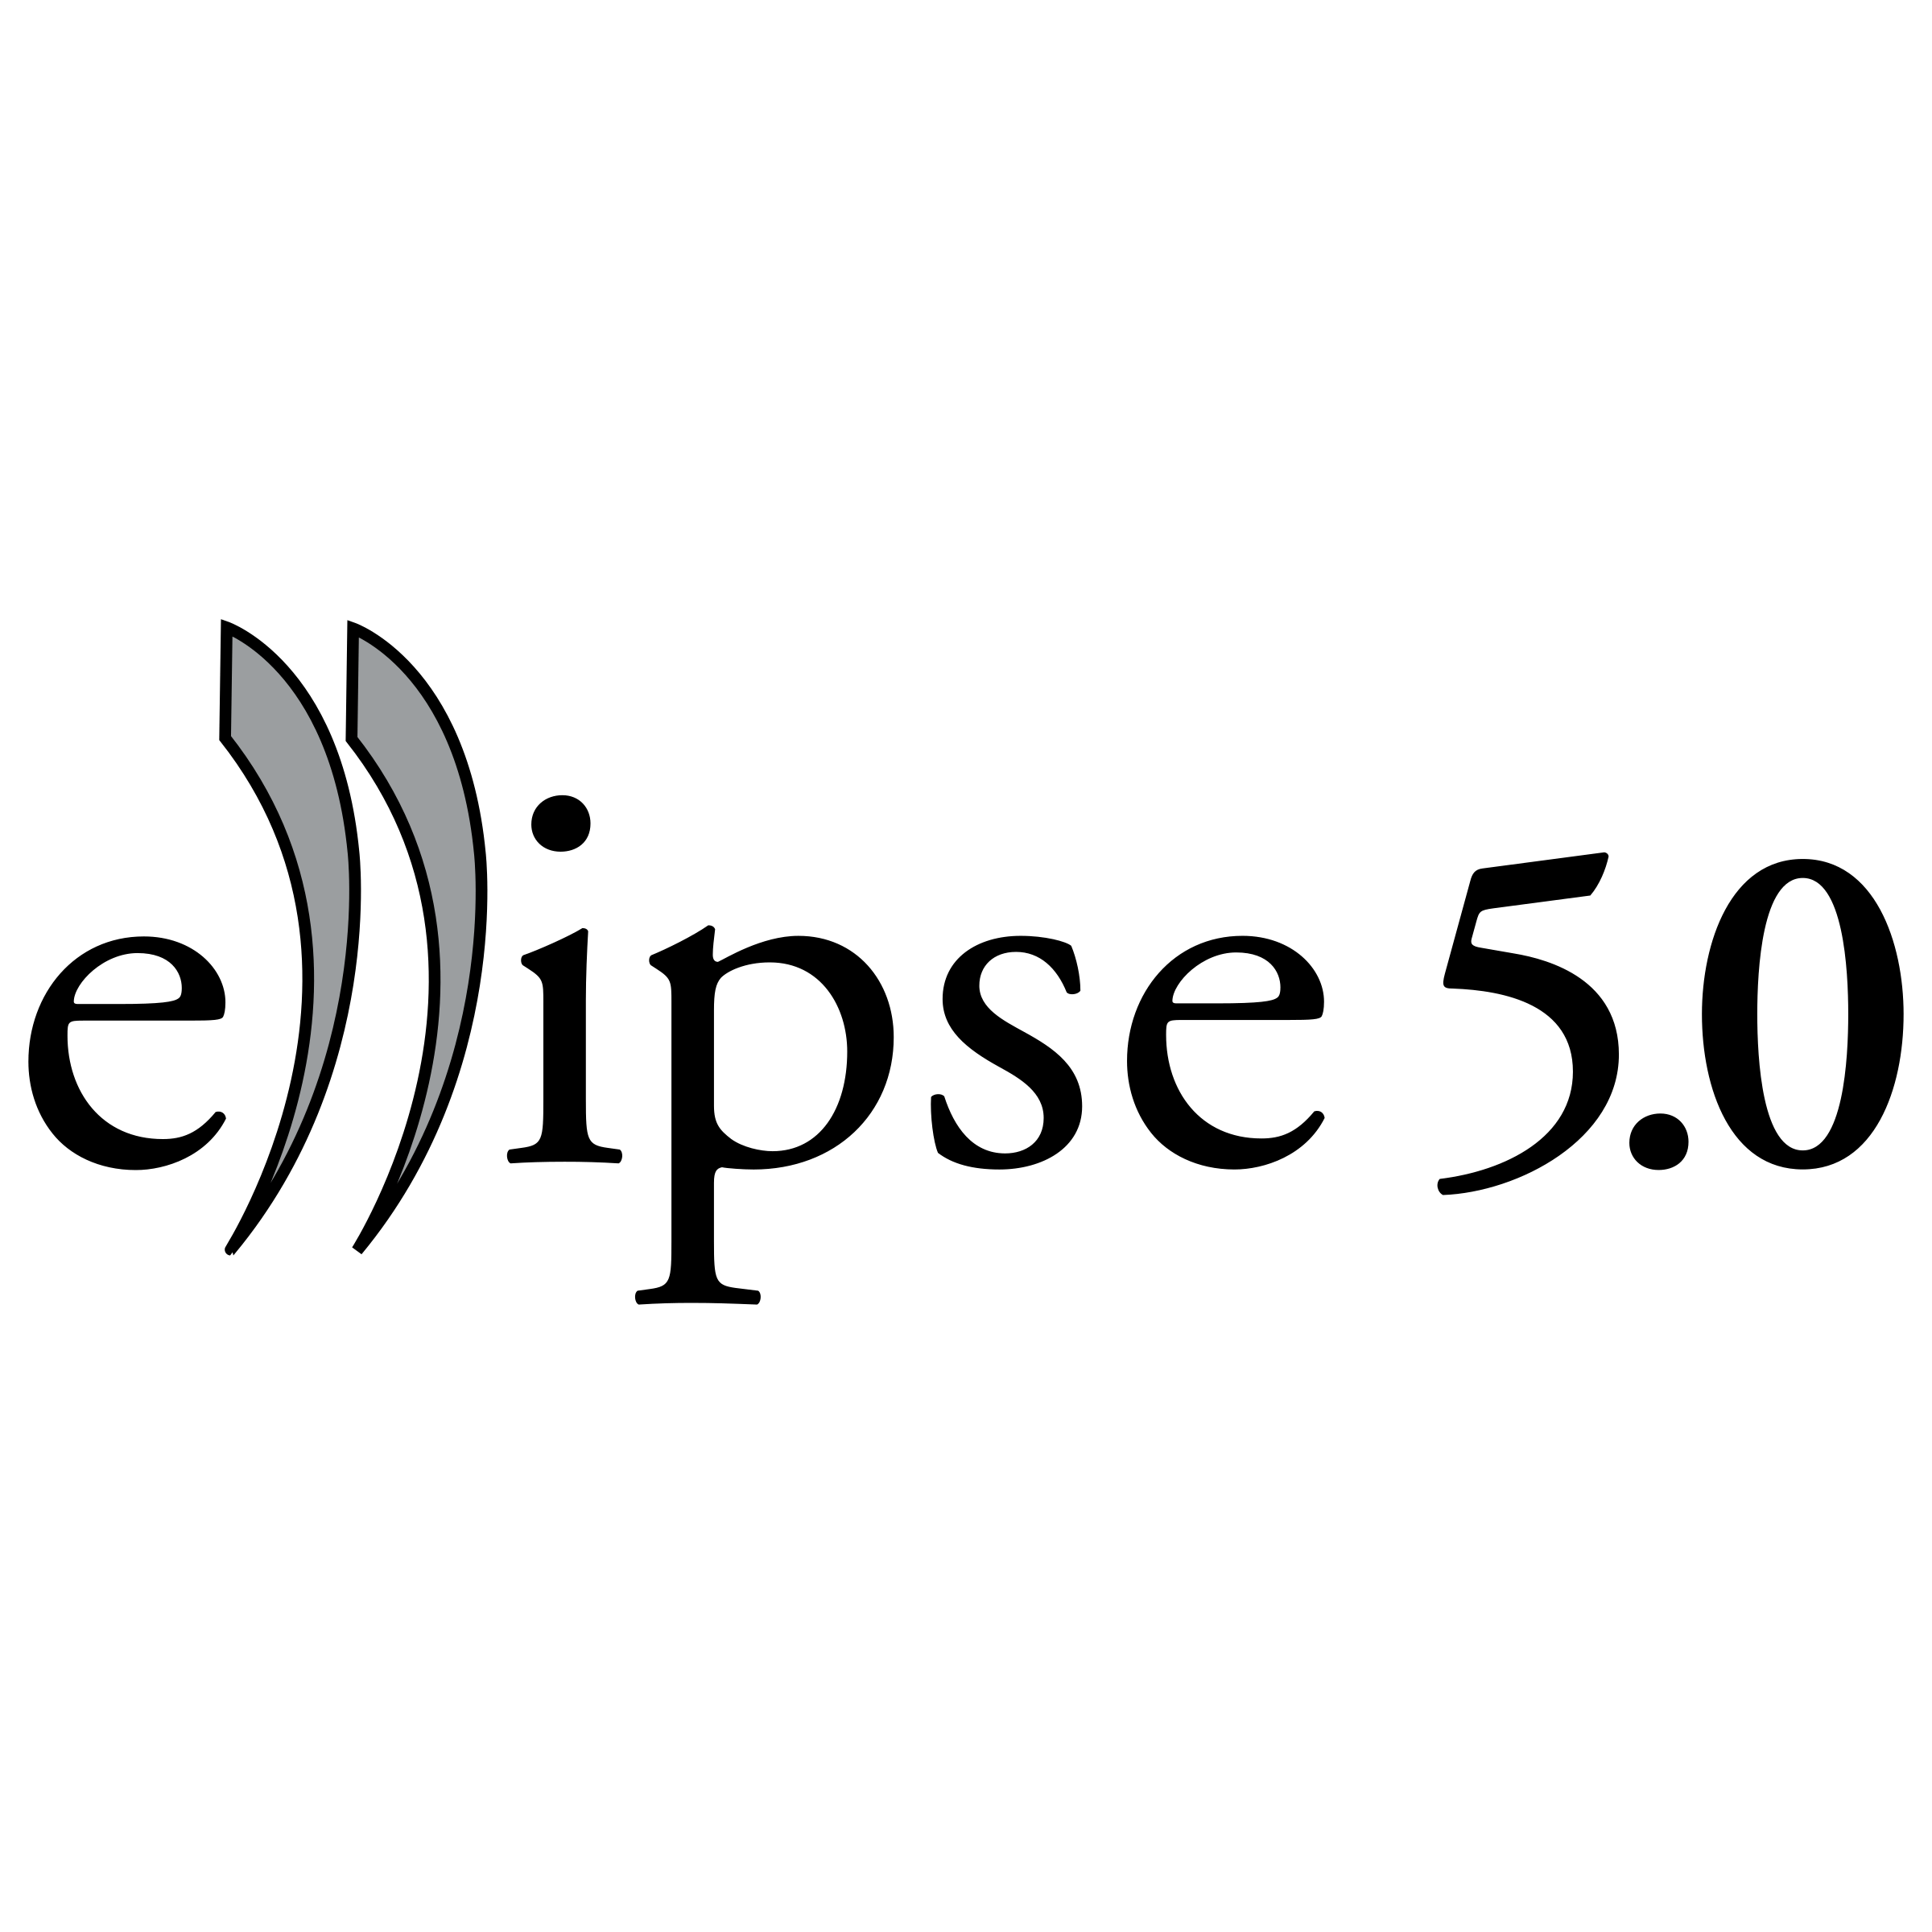 Ellipse Logo - Ellipse Logo PNG Transparent & SVG Vector - Freebie Supply